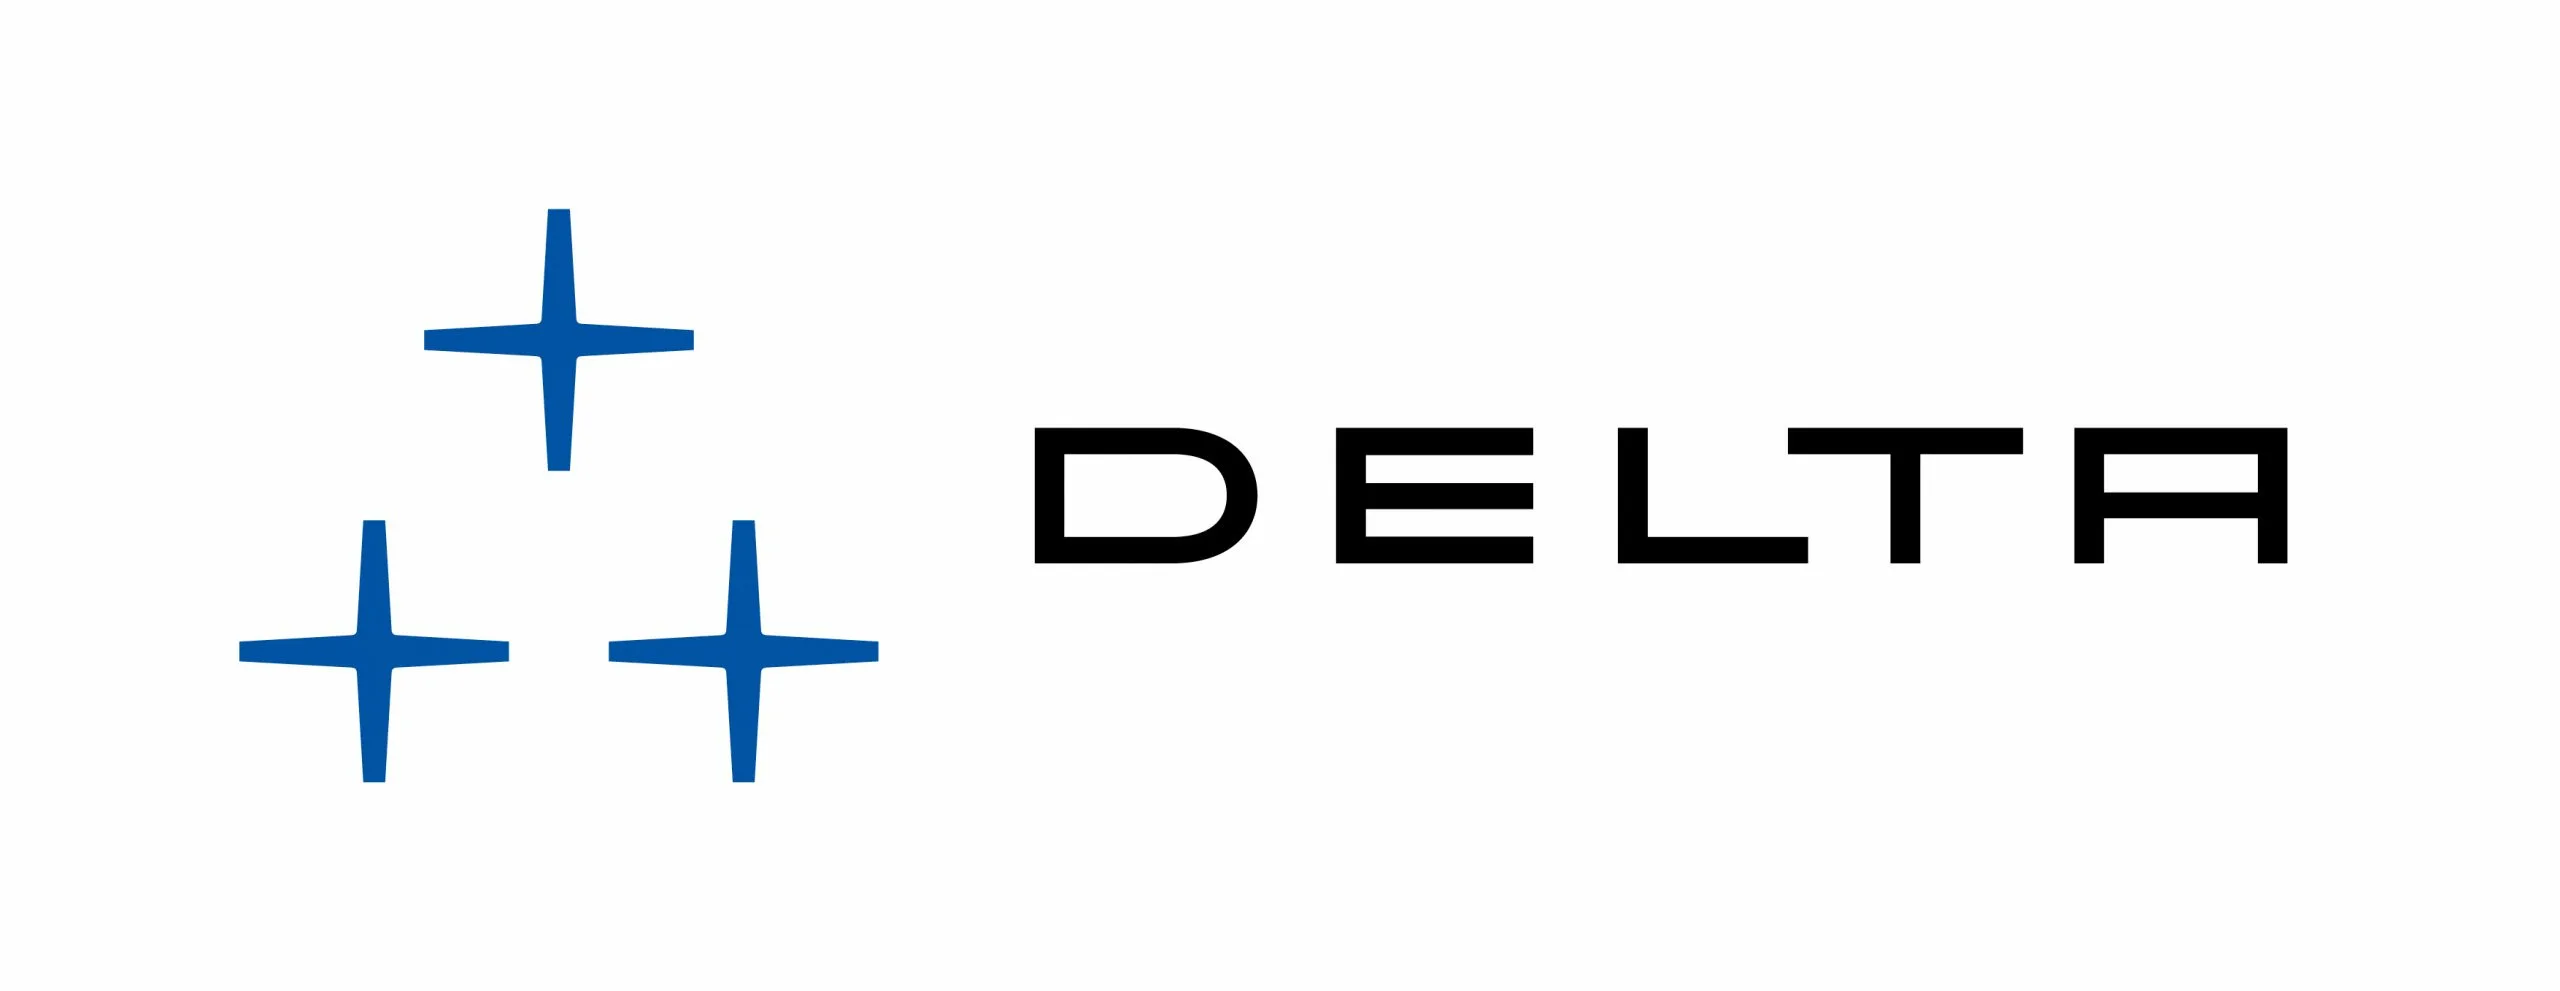 logo delta